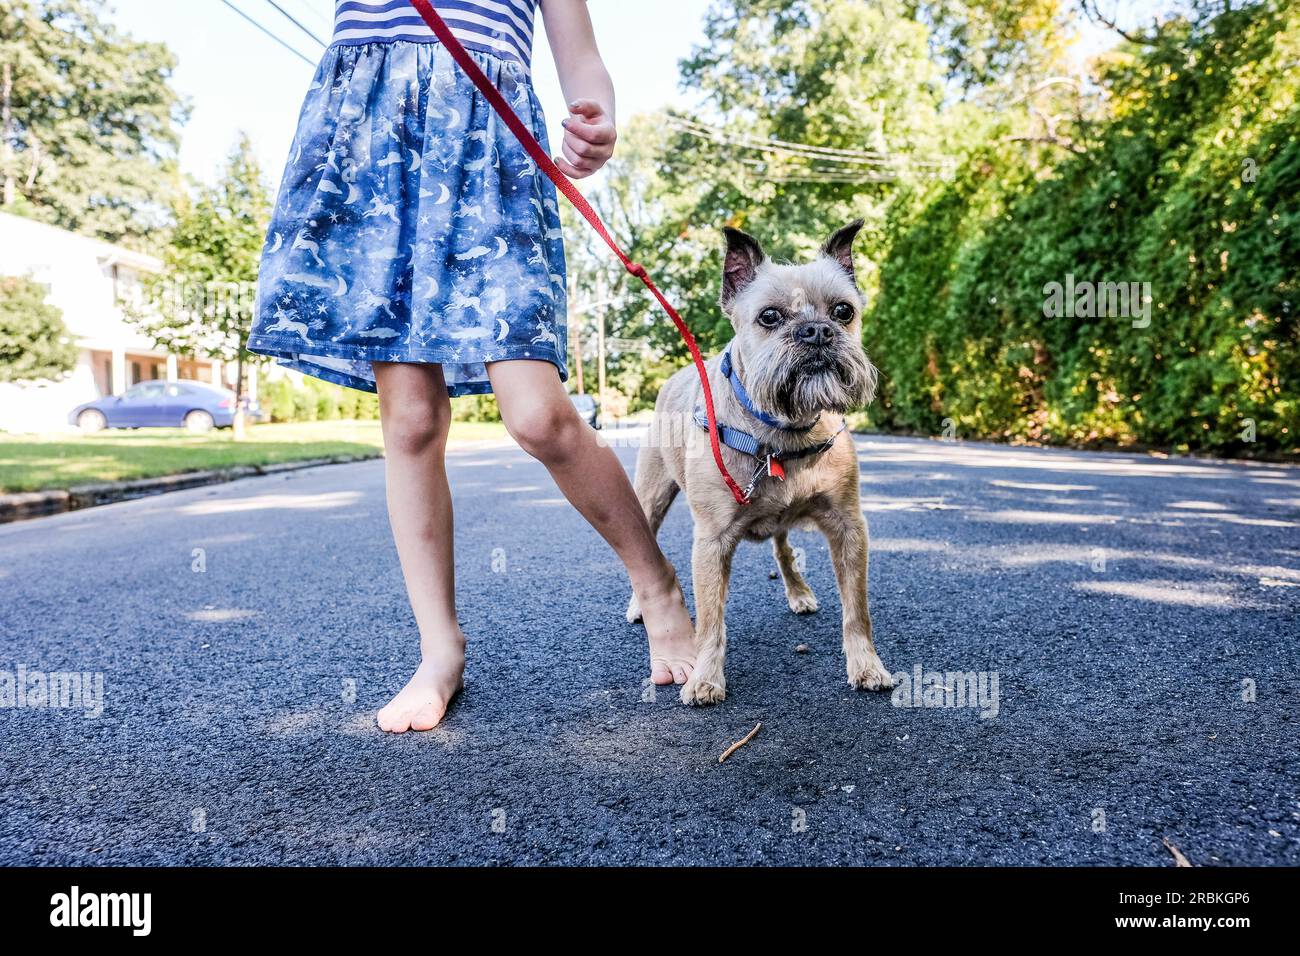 image sans visage d'une fille et d'un chien portant une robe debout sur le trottoir Banque D'Images